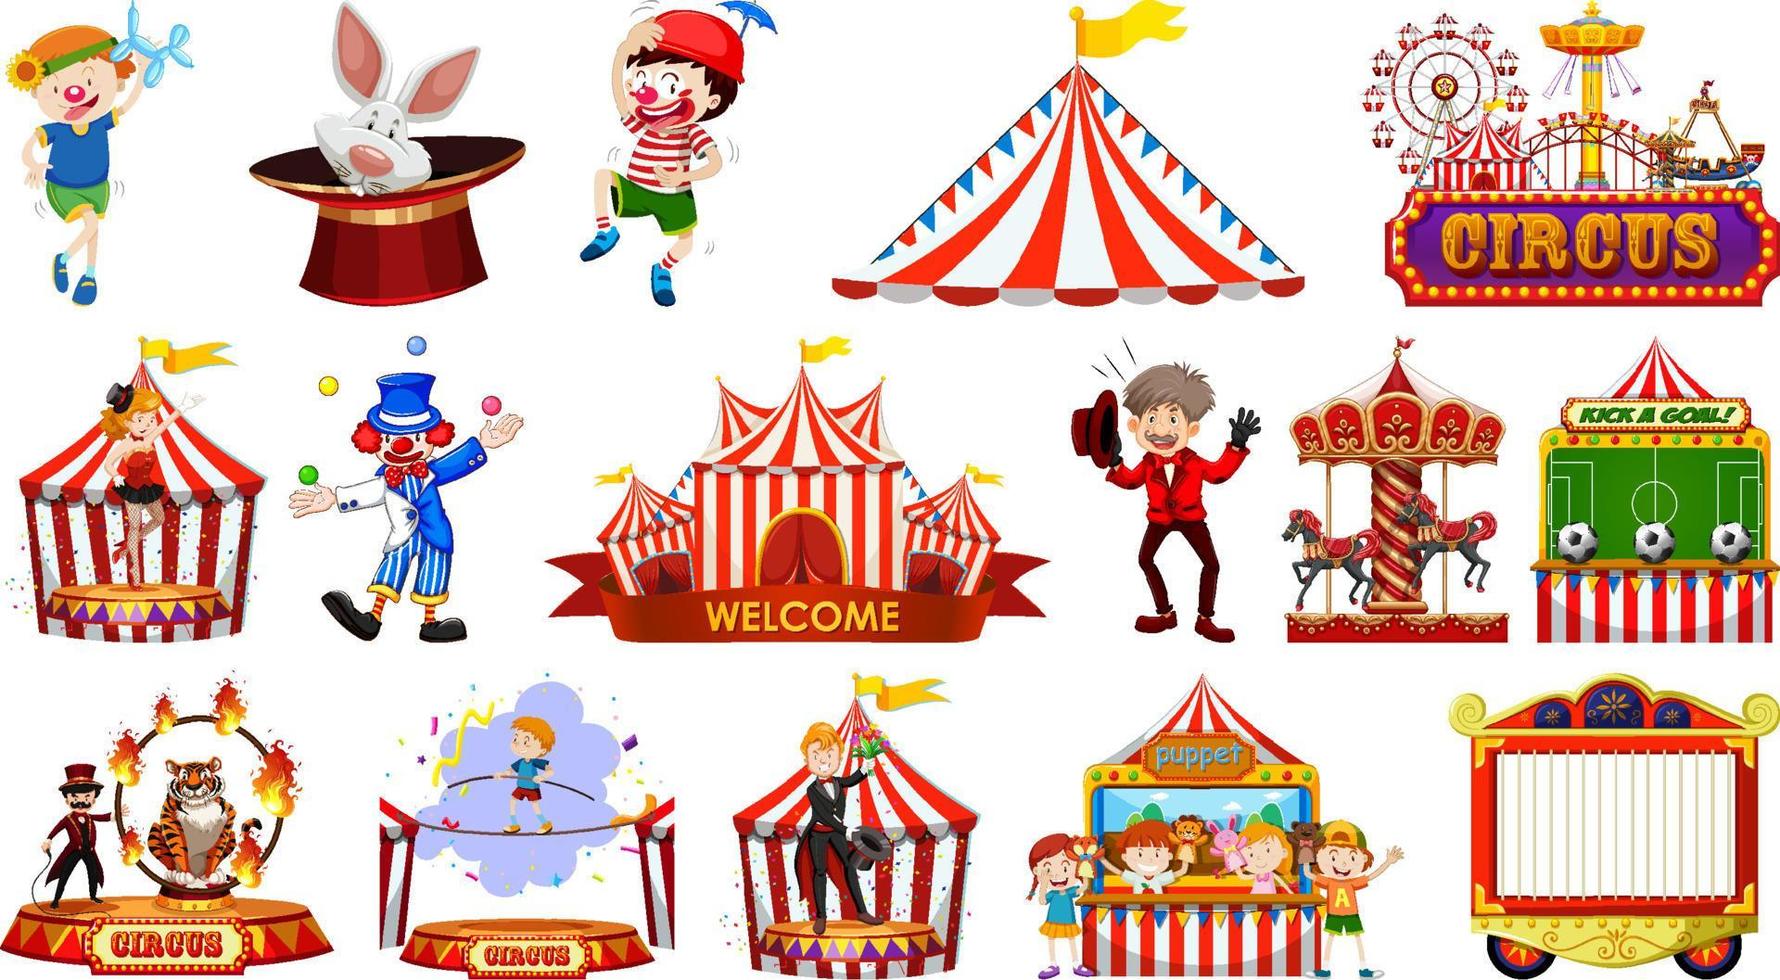 ensemble de personnages de cirque et d'éléments de parc d'attractions vecteur